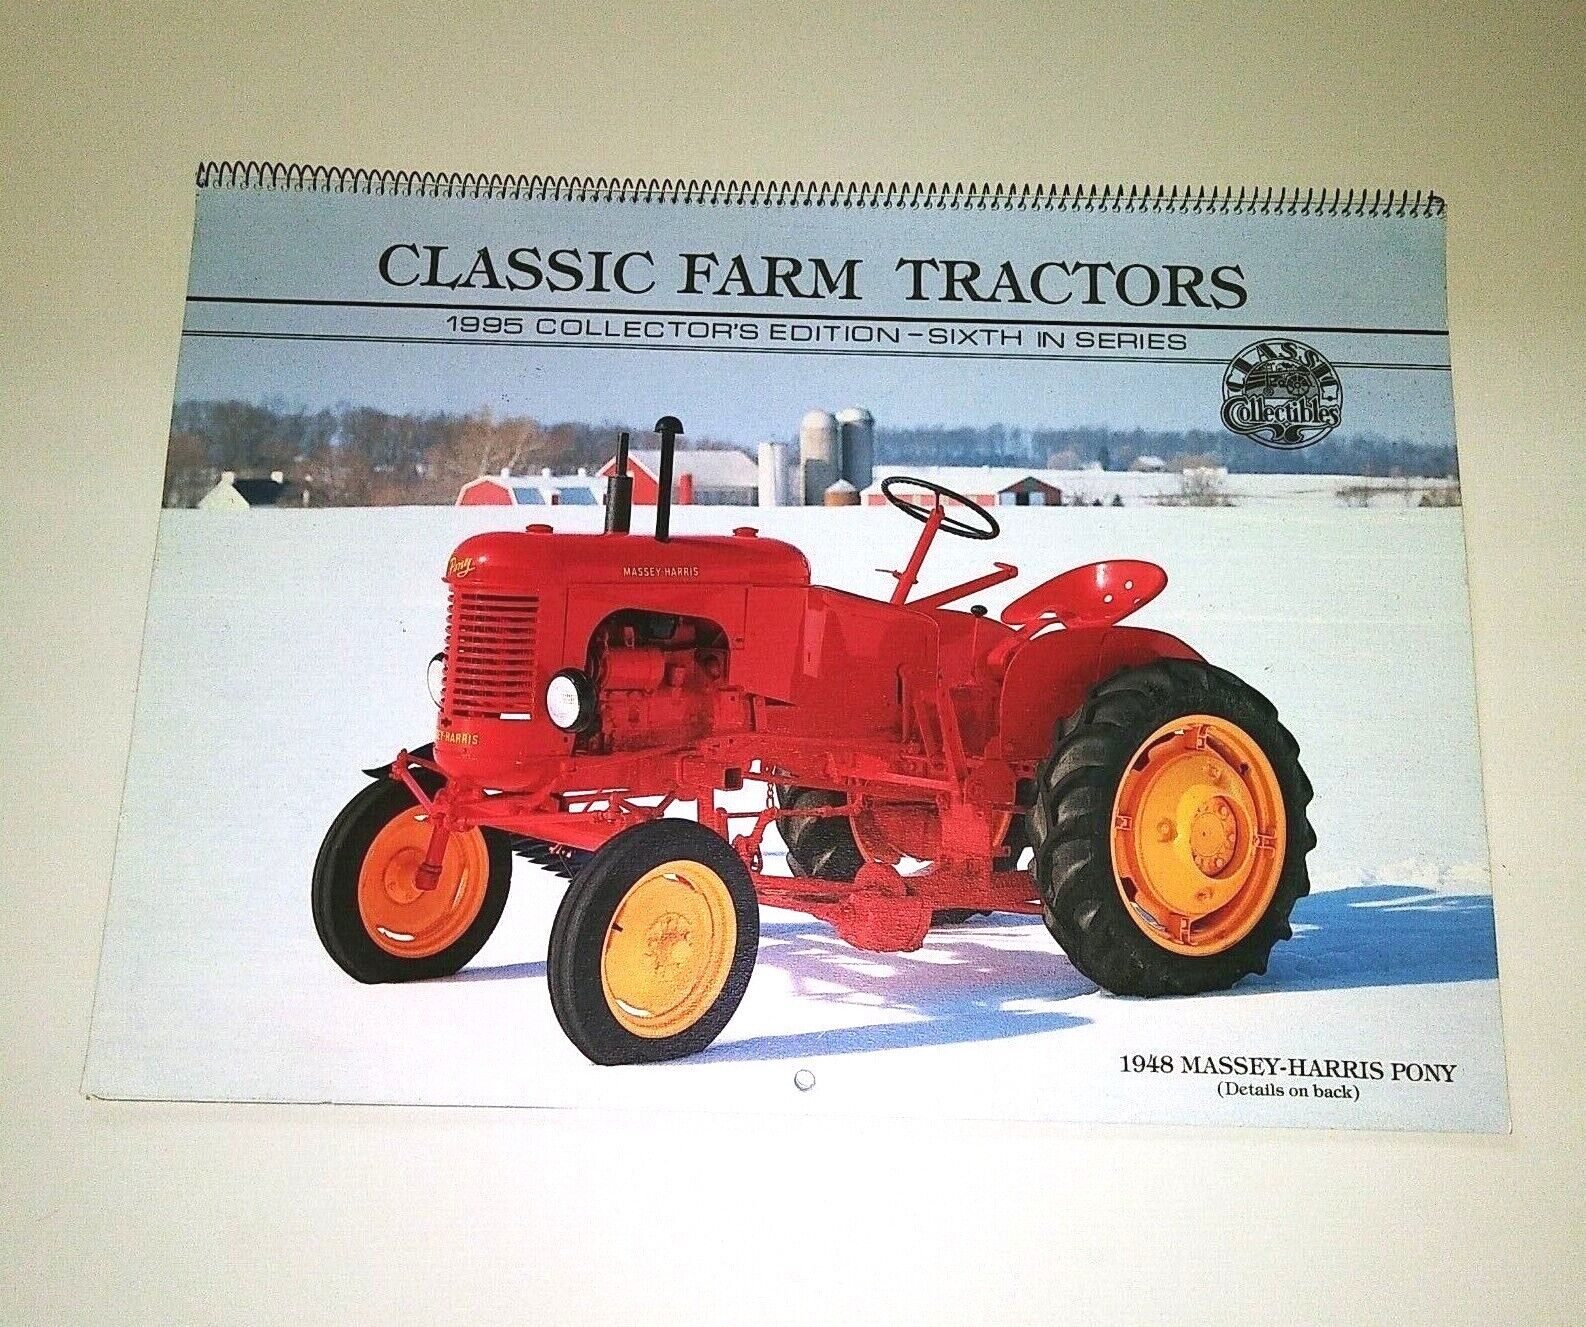 1995 DUPONT Classic Farm Tractors Collectors Edition Calendar. 